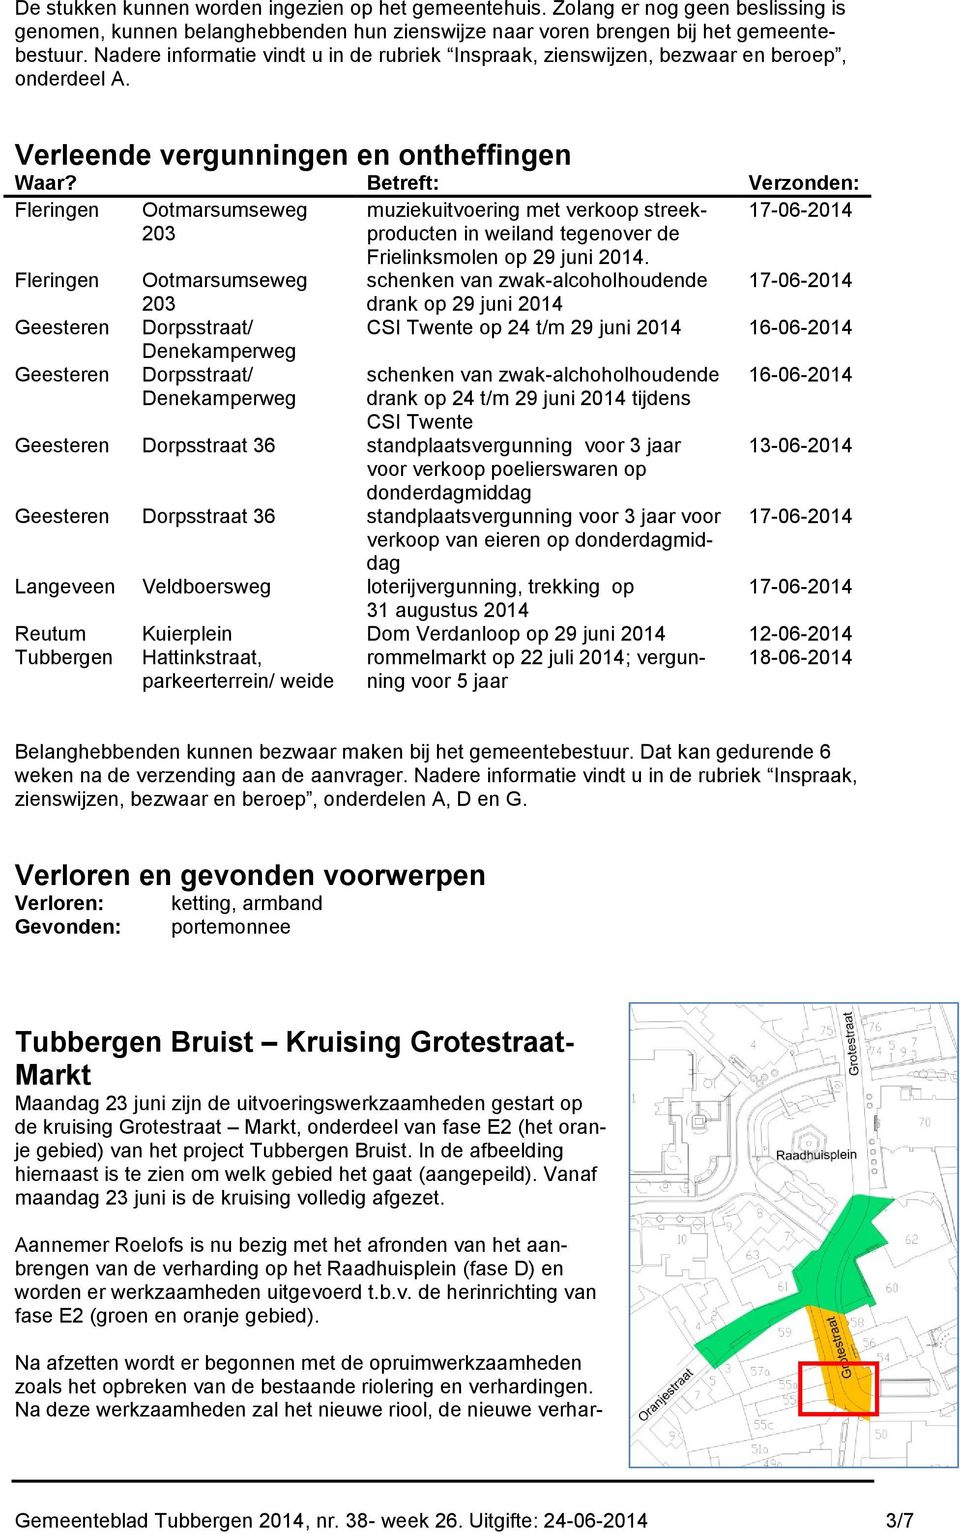 Betreft: Verzonden: Fleringen Ootmarsumseweg muziekuitvoering met verkoop streekproducten 17-06-2014 203 in weiland tegenover de Frielinksmolen op 29 juni 2014.